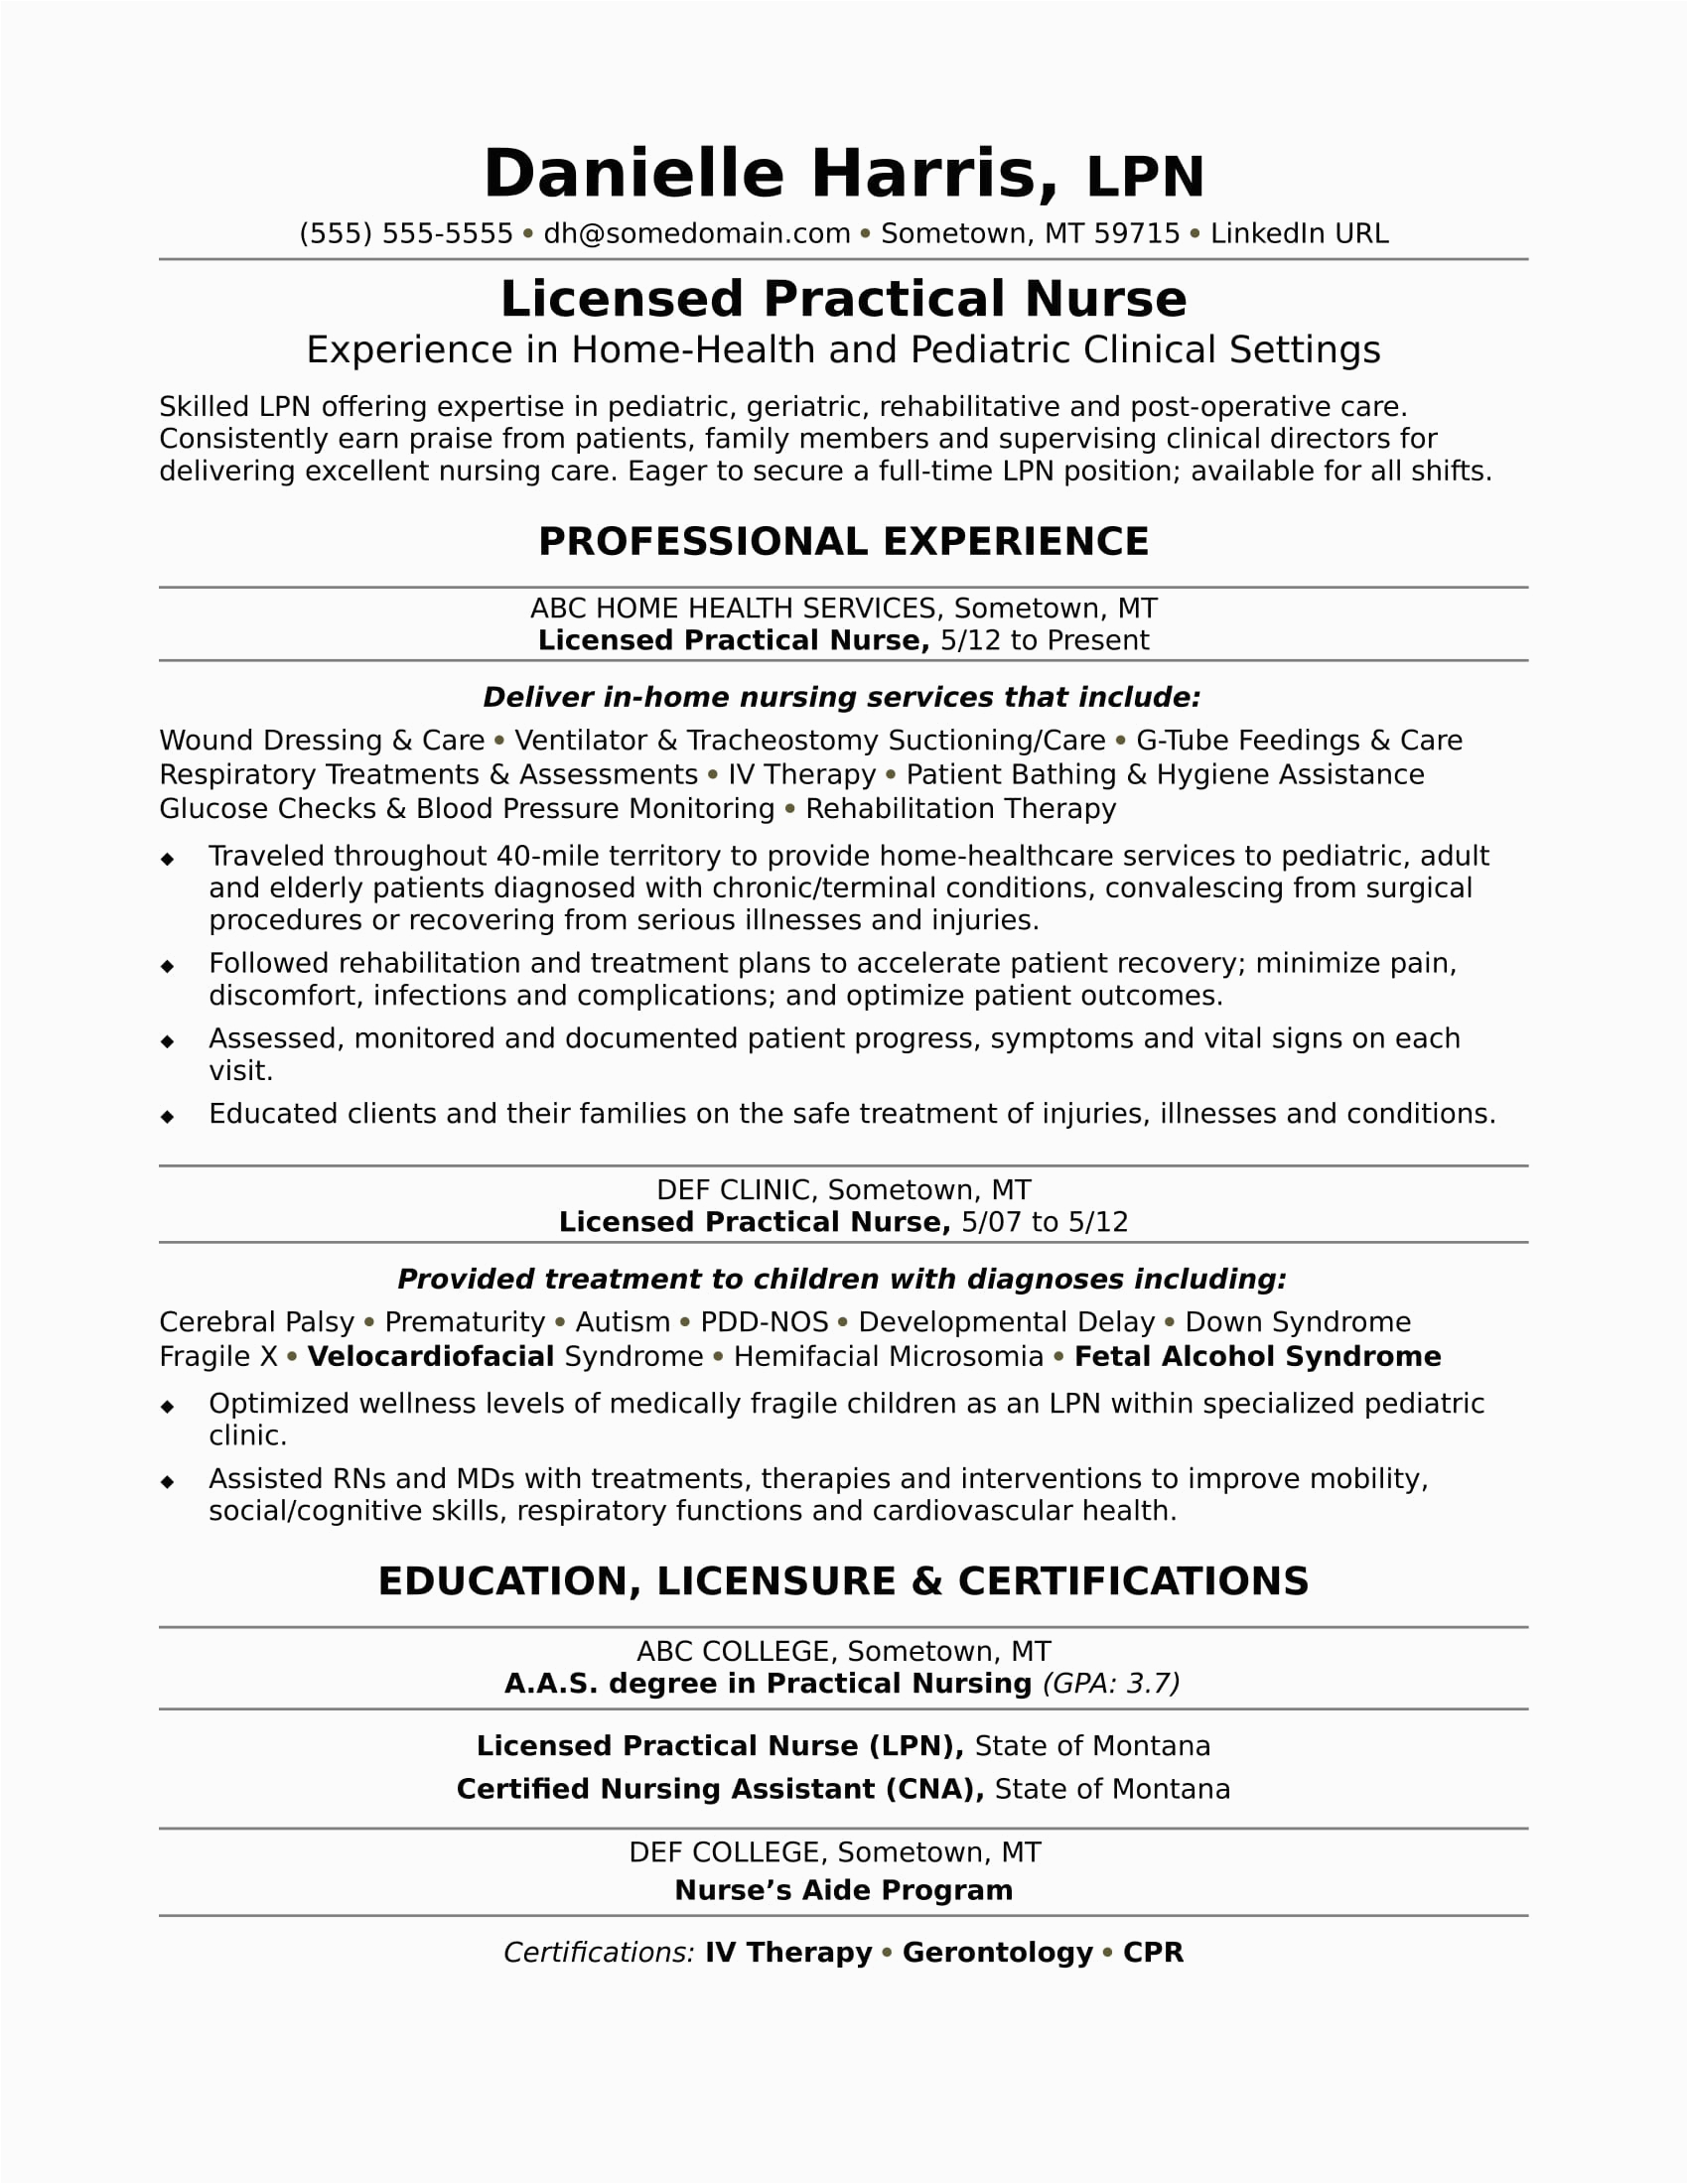 Sample Resume for Licensed Vocational Nurse Licensed Practical Nurse Resume Sample